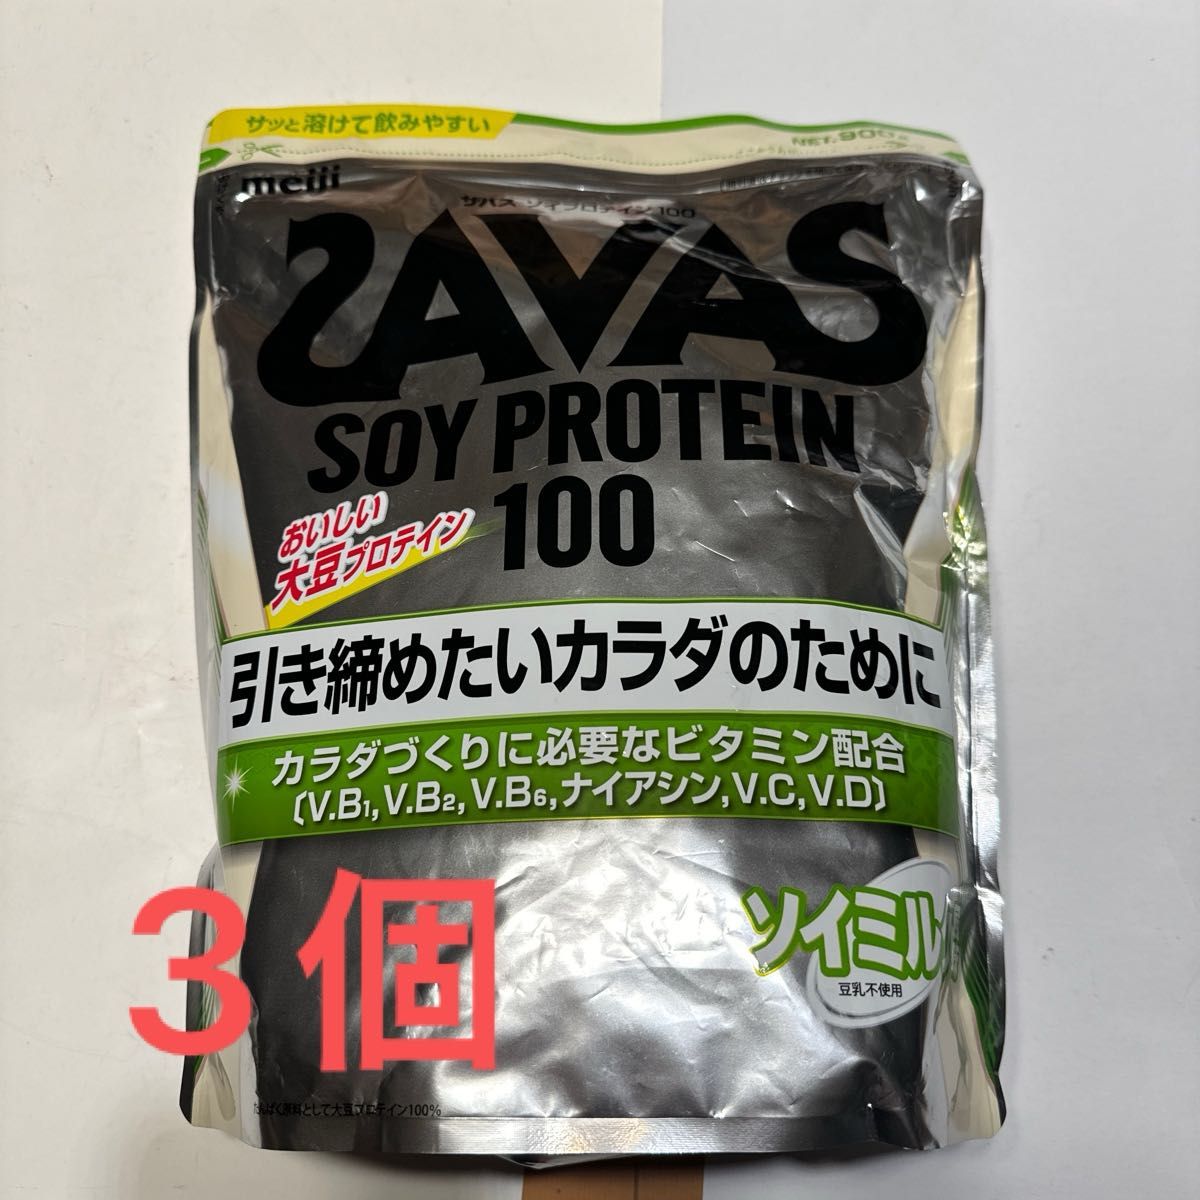 ザバス(SAVAS) ソイプロテイン100 ソイミルク風味 900g x 3個セット